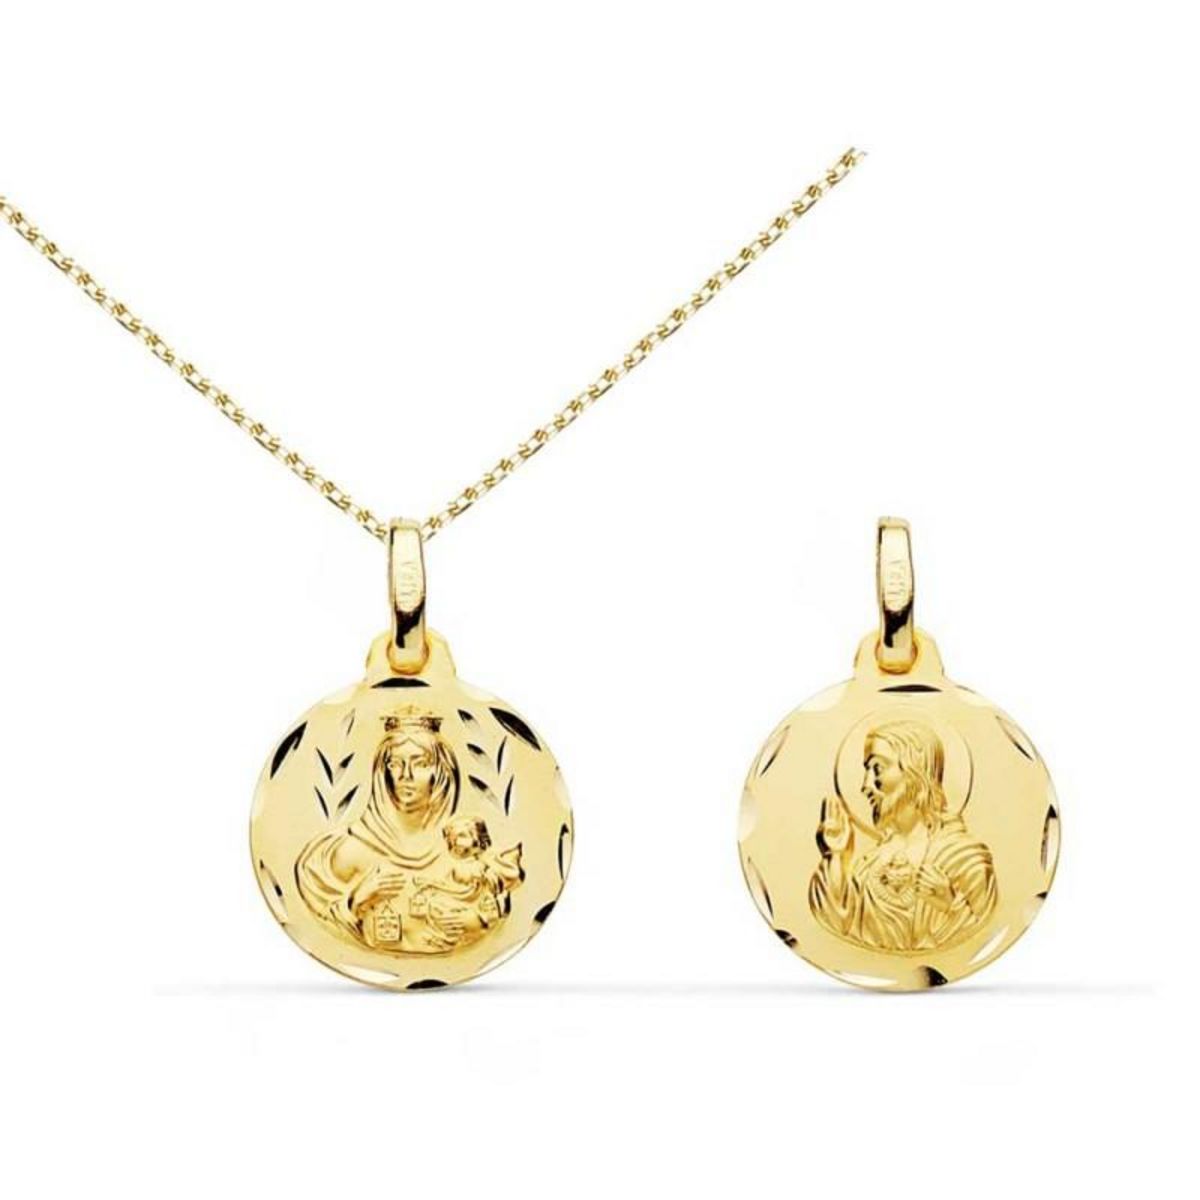  Collier - Médaille Scapulaire Or 18 Carats 750/000 Jaune - Chaîne Dorée